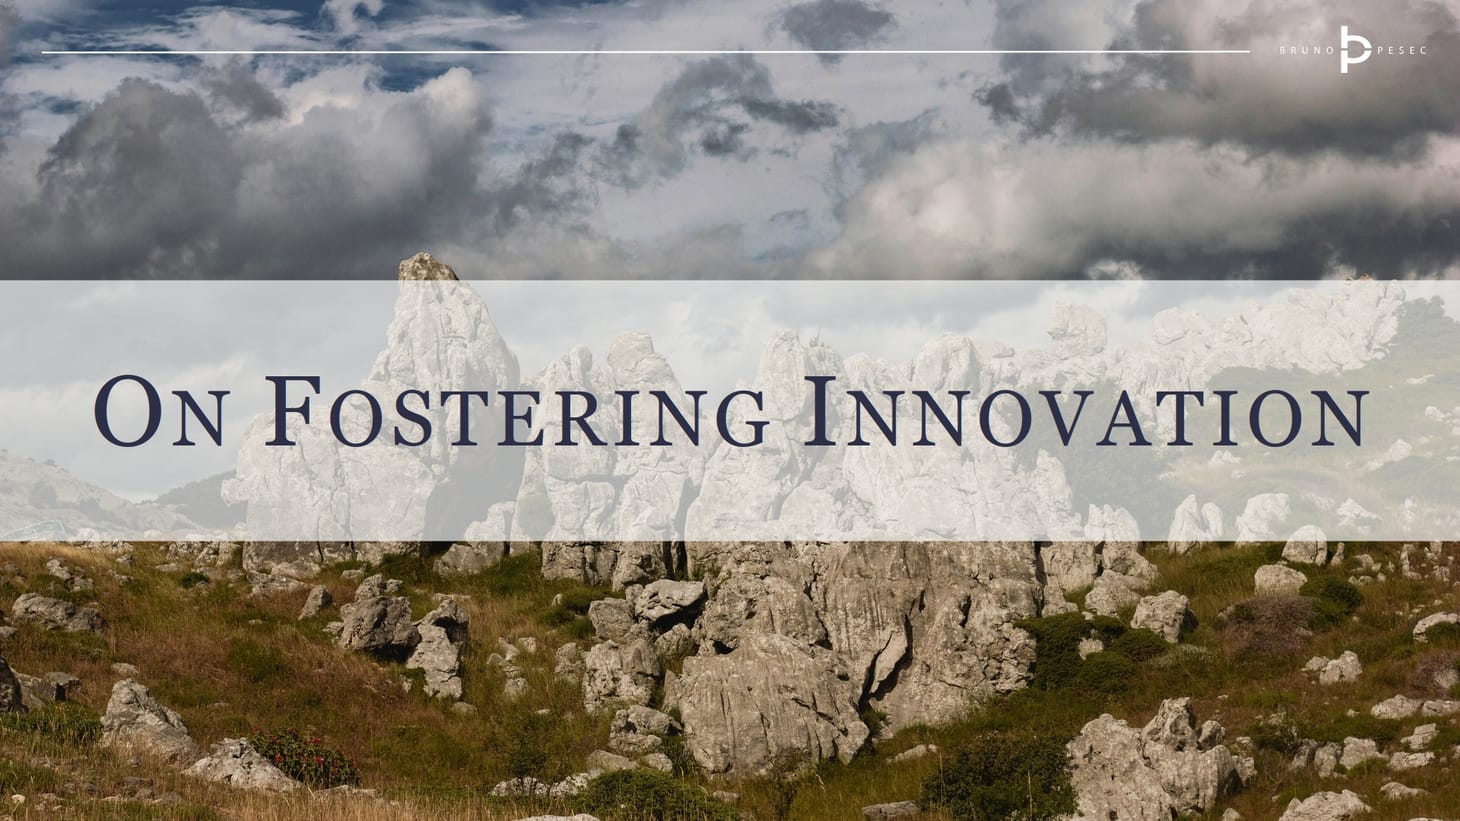 On fostering innovation